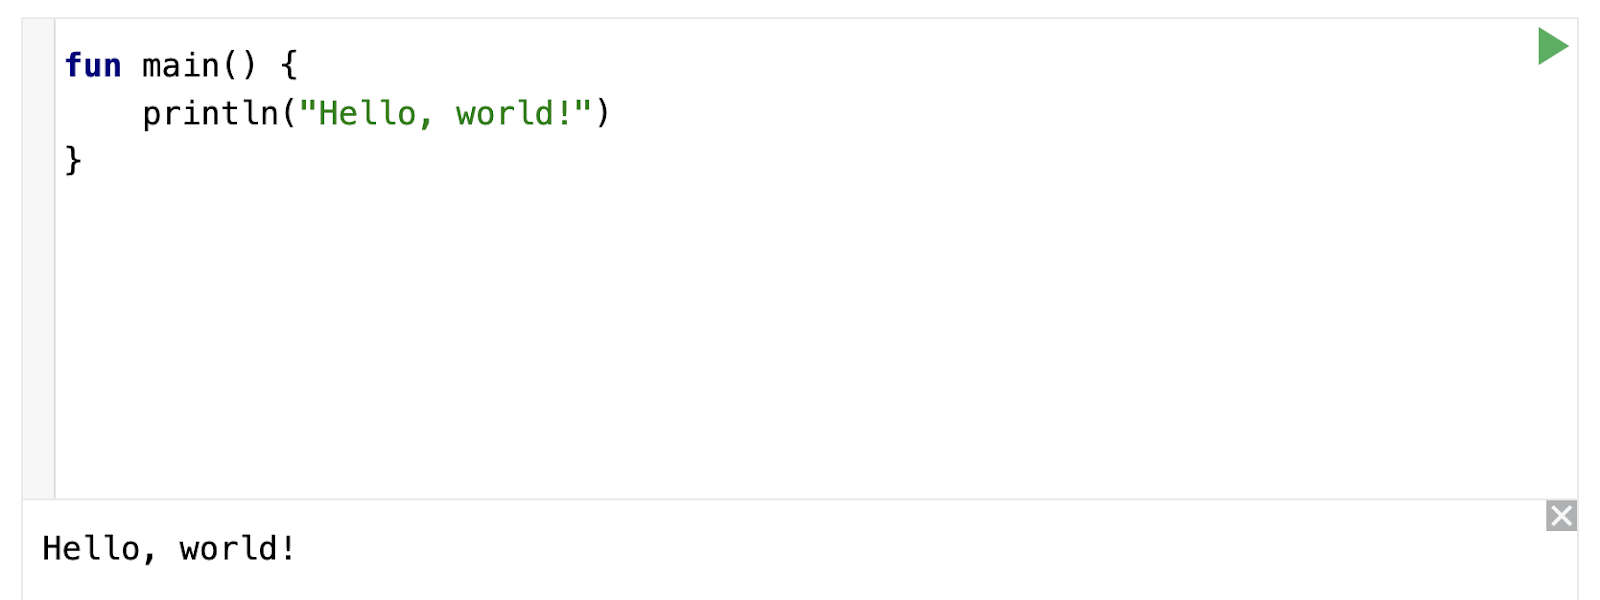 Cette capture d'écran montre une partie de la page Web de Kotlin Playground. L'éditeur de code affiche le code d'un programme Hello World. Sous l'éditeur de code, un volet de sortie affiche la phrase "Hello, world!". 